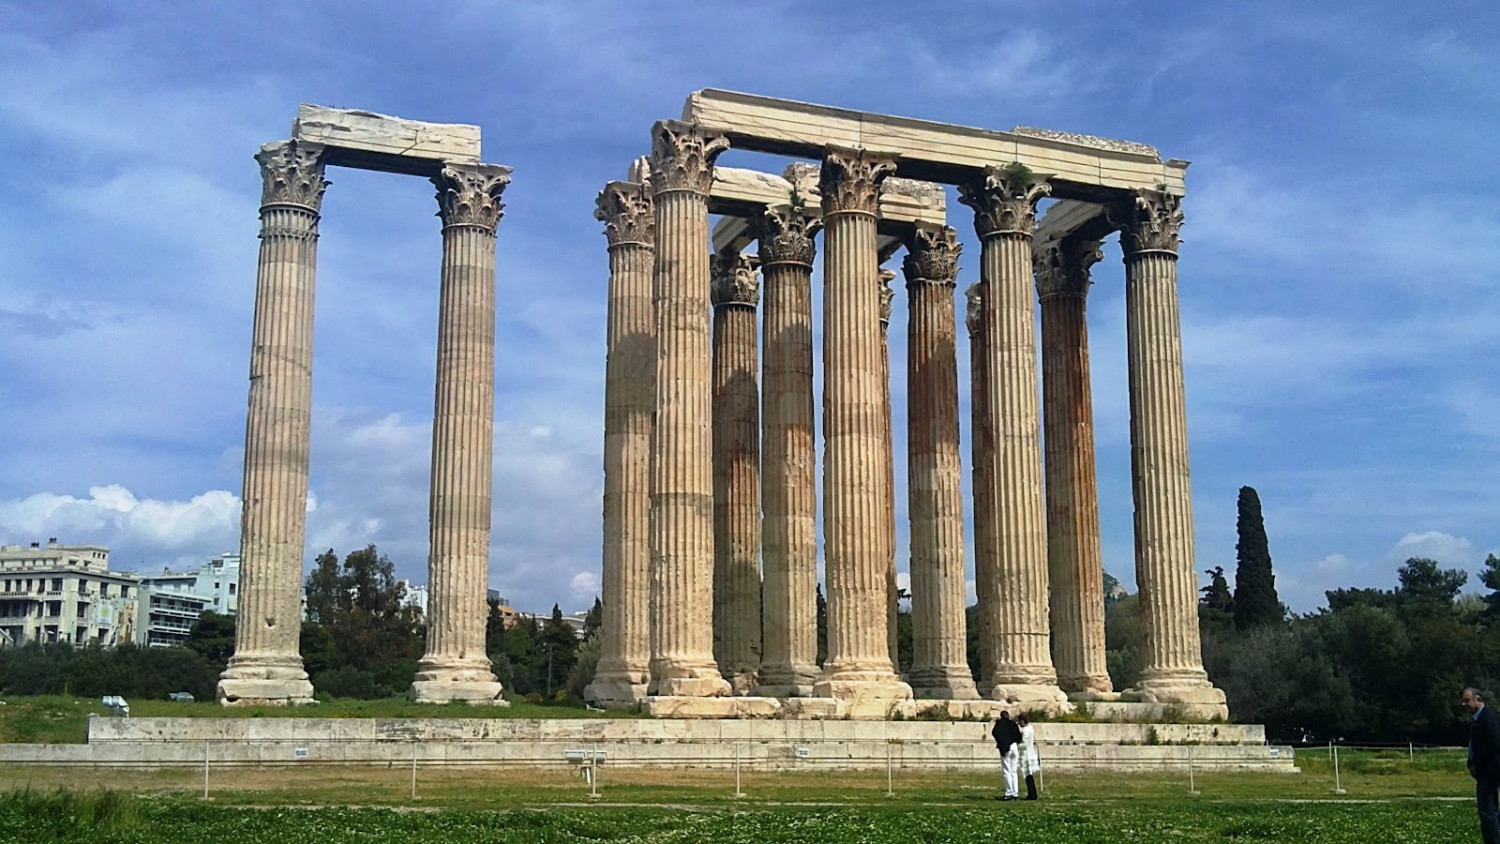 Alternative free walking tour in Athens